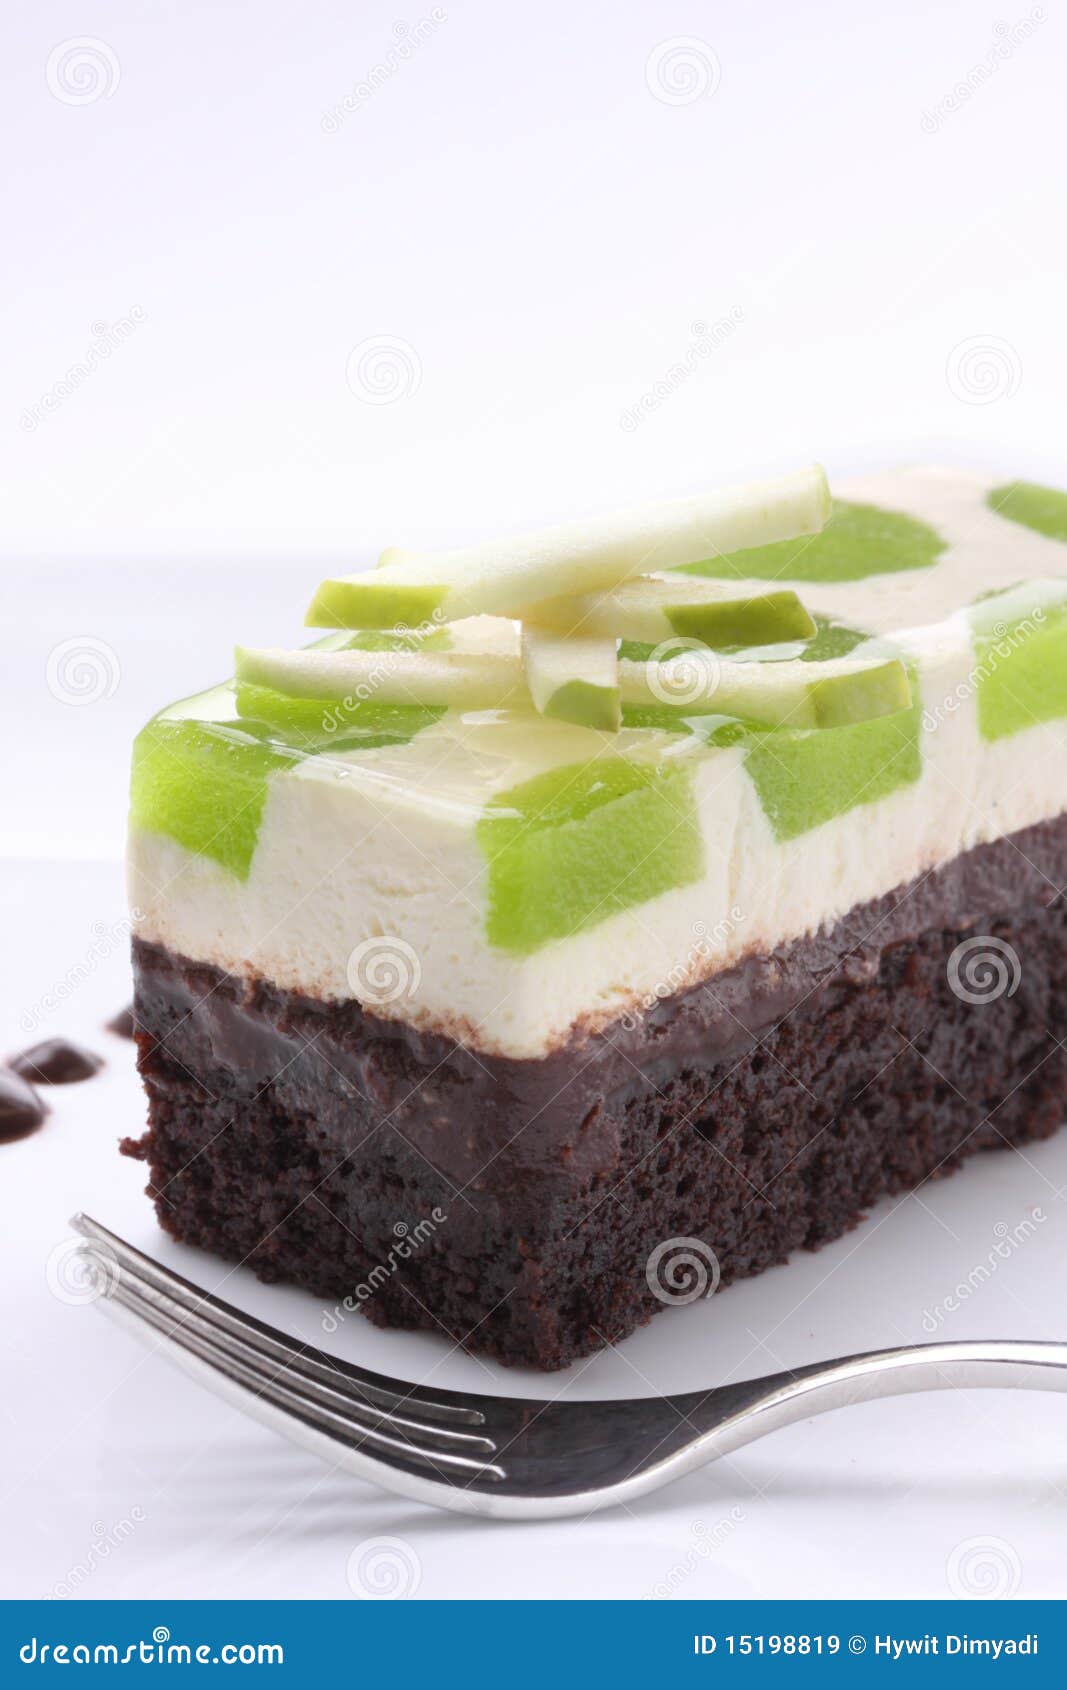 过生日做什么美食蛋糕（我亲自为他做的蛋糕） - 美食-小樱百科网